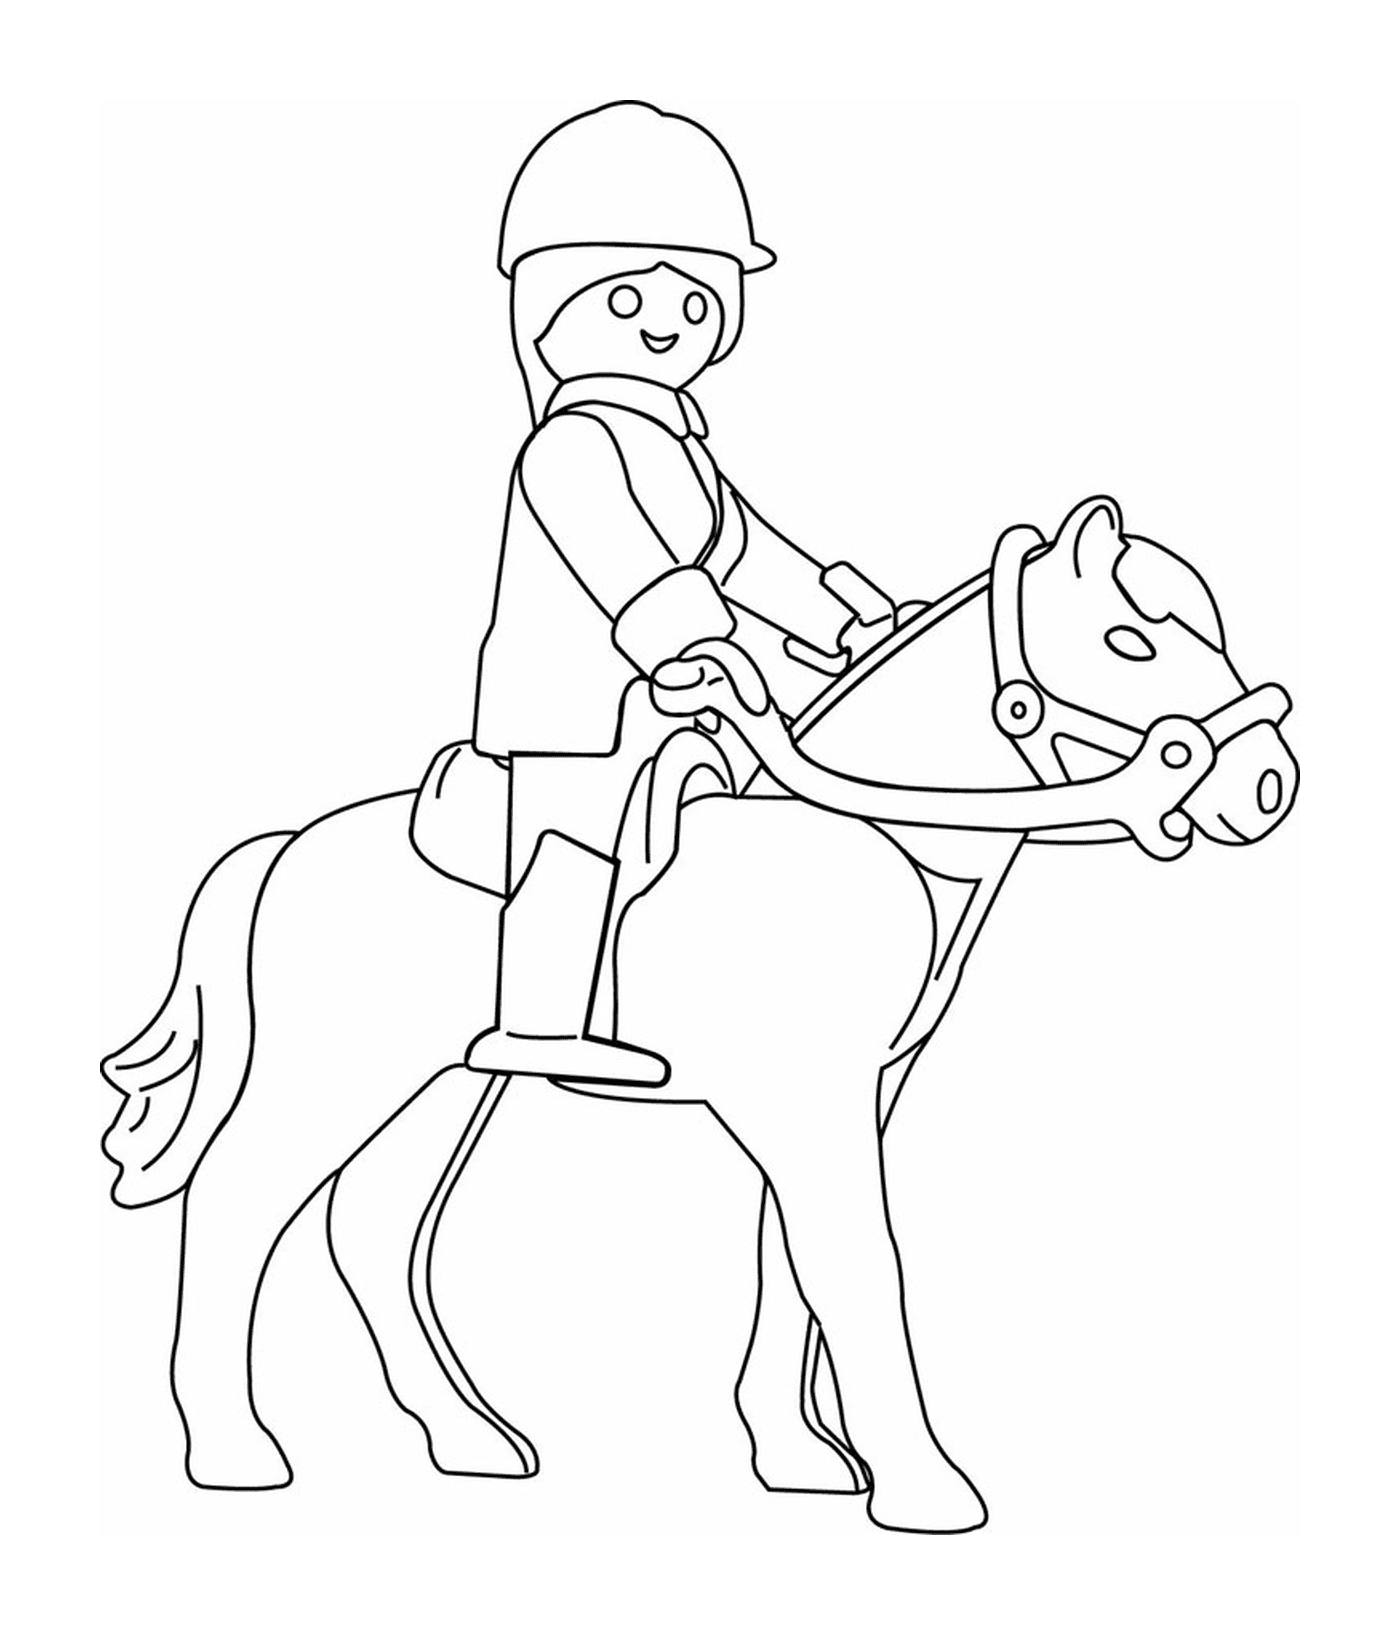  Una persona a caballo 